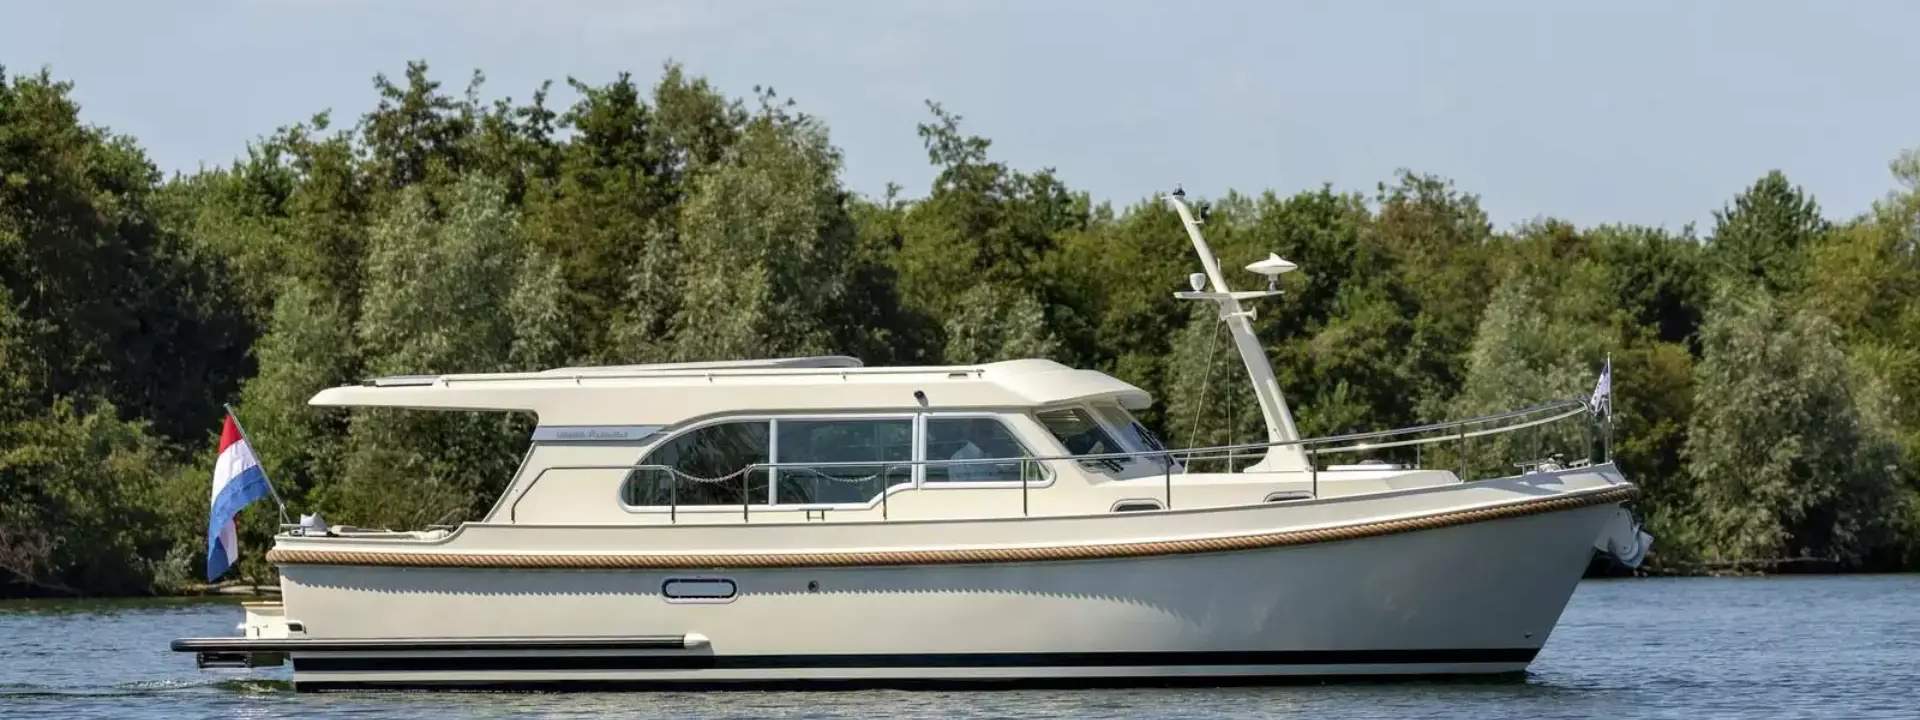 Моторная яхта Grand Sturdy 35.0 Sedan